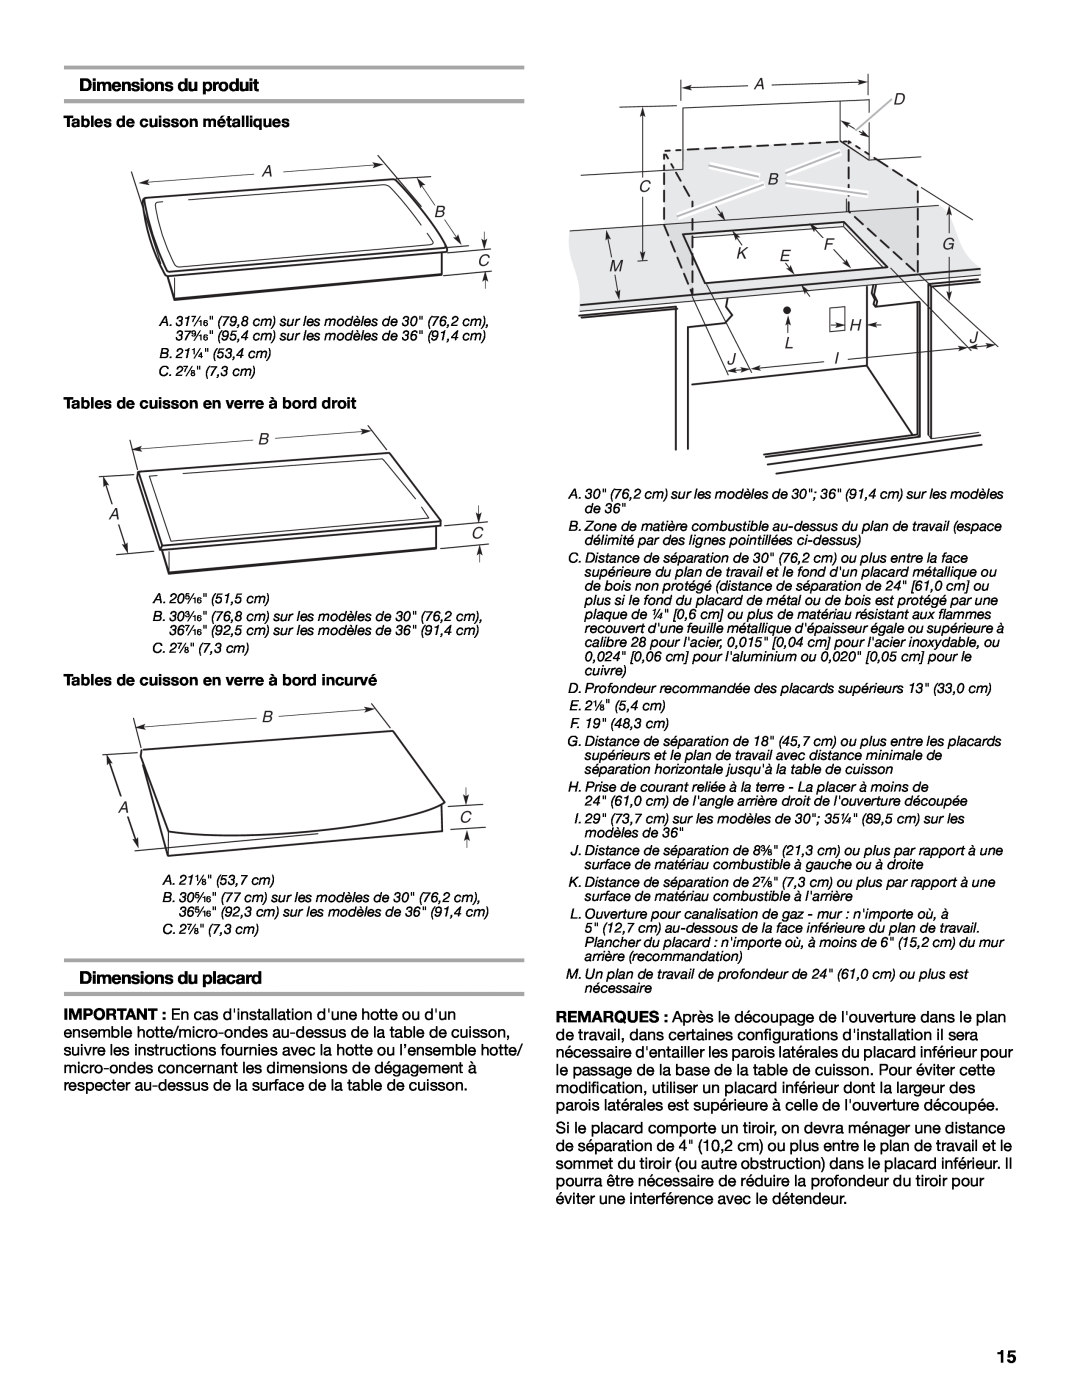 Whirlpool W10131955C Dimensions du produit, Dimensions du placard, Tables de cuisson métalliques, A D Cb, Fg H, B A C 